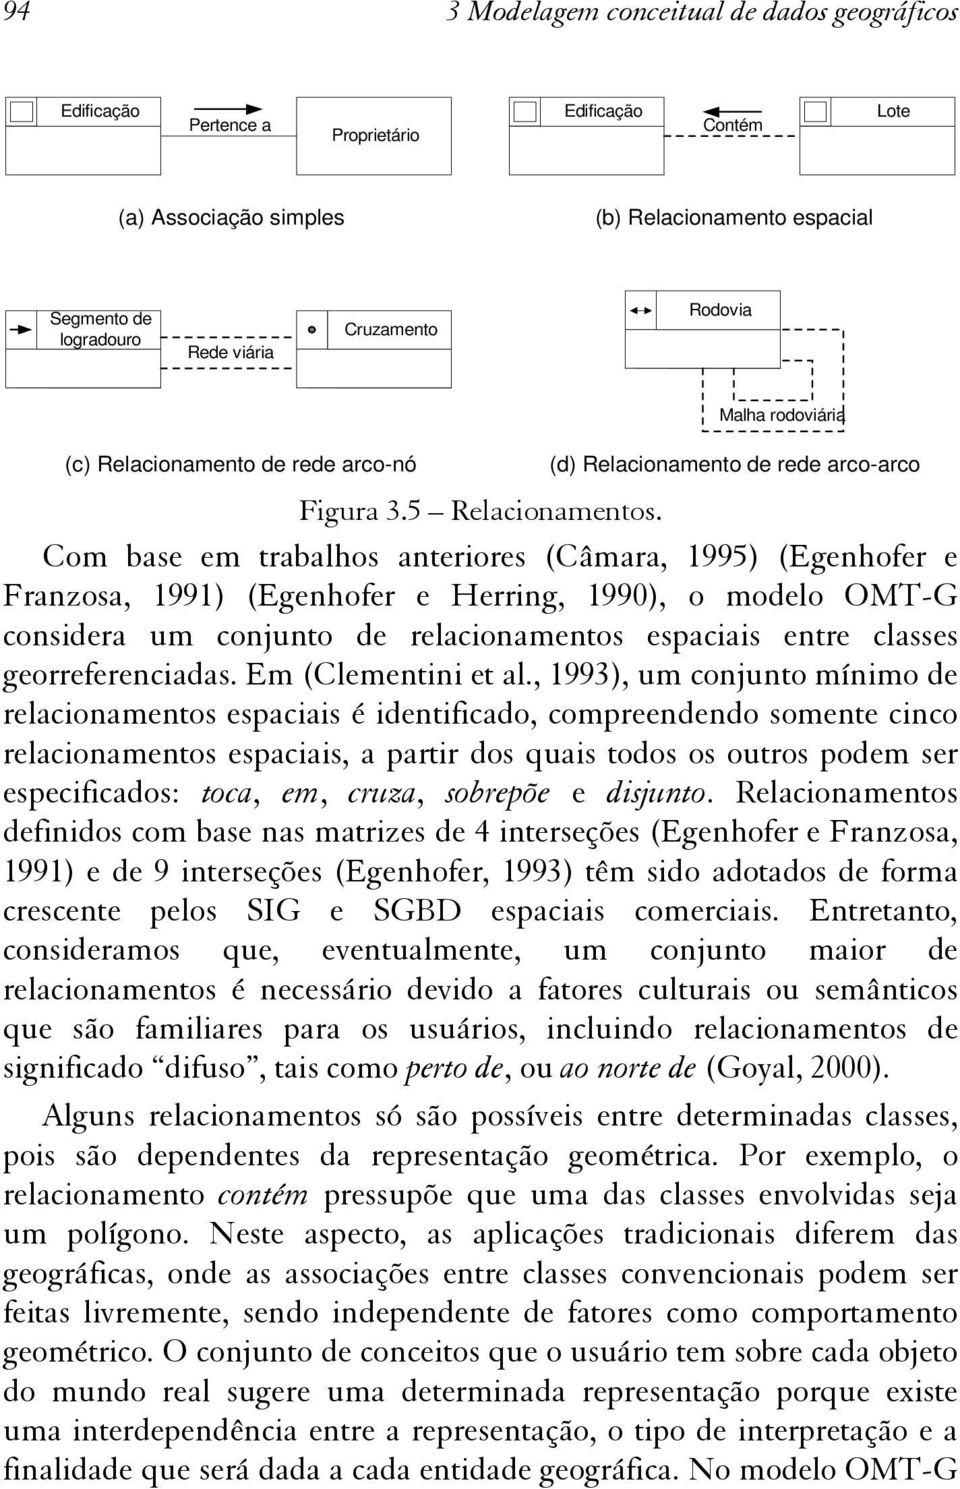 Com base em trabalhos anteriores (Câmara, 1995) (Egenhofer e Franzosa, 1991) (Egenhofer e Herring, 1990), o modelo OMT-G considera um conjunto de relacionamentos espaciais entre classes